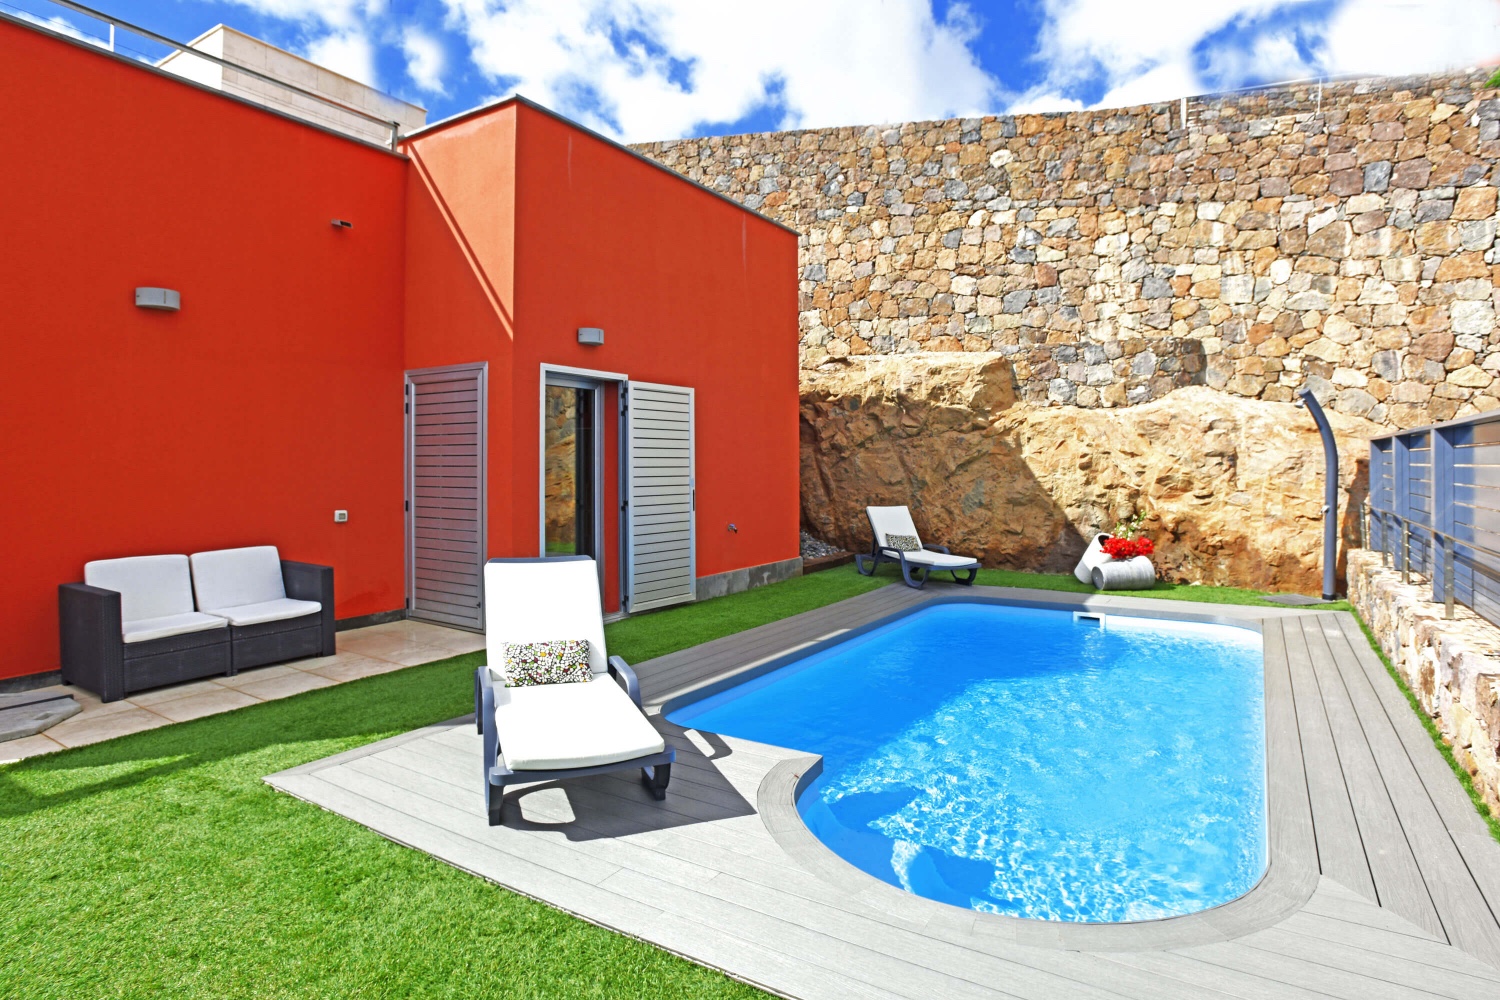 Schönes zweistöckiges Haus mit einem angenehmen Außenbereich mit privatem beheiztem Pool, großer Terrasse und Gartenmöbeln